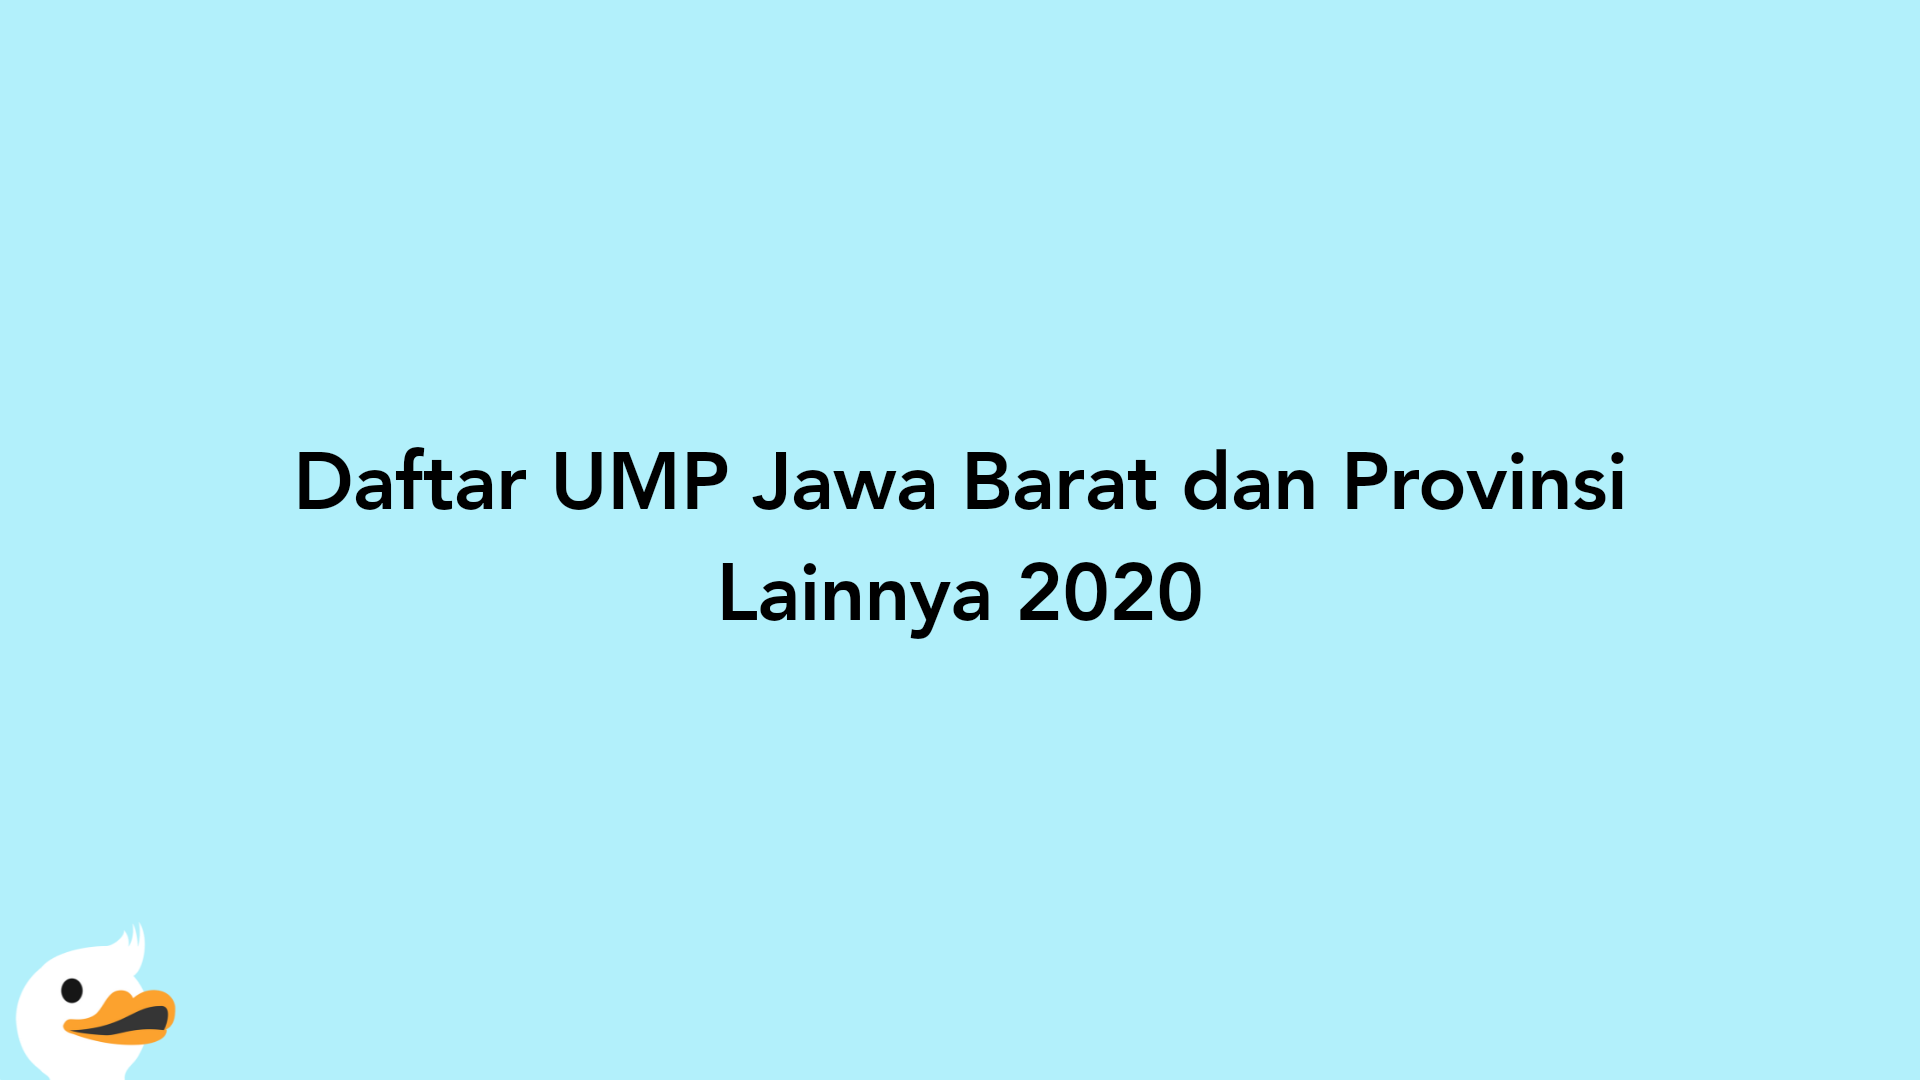 Daftar UMP Jawa Barat dan Provinsi Lainnya 2020